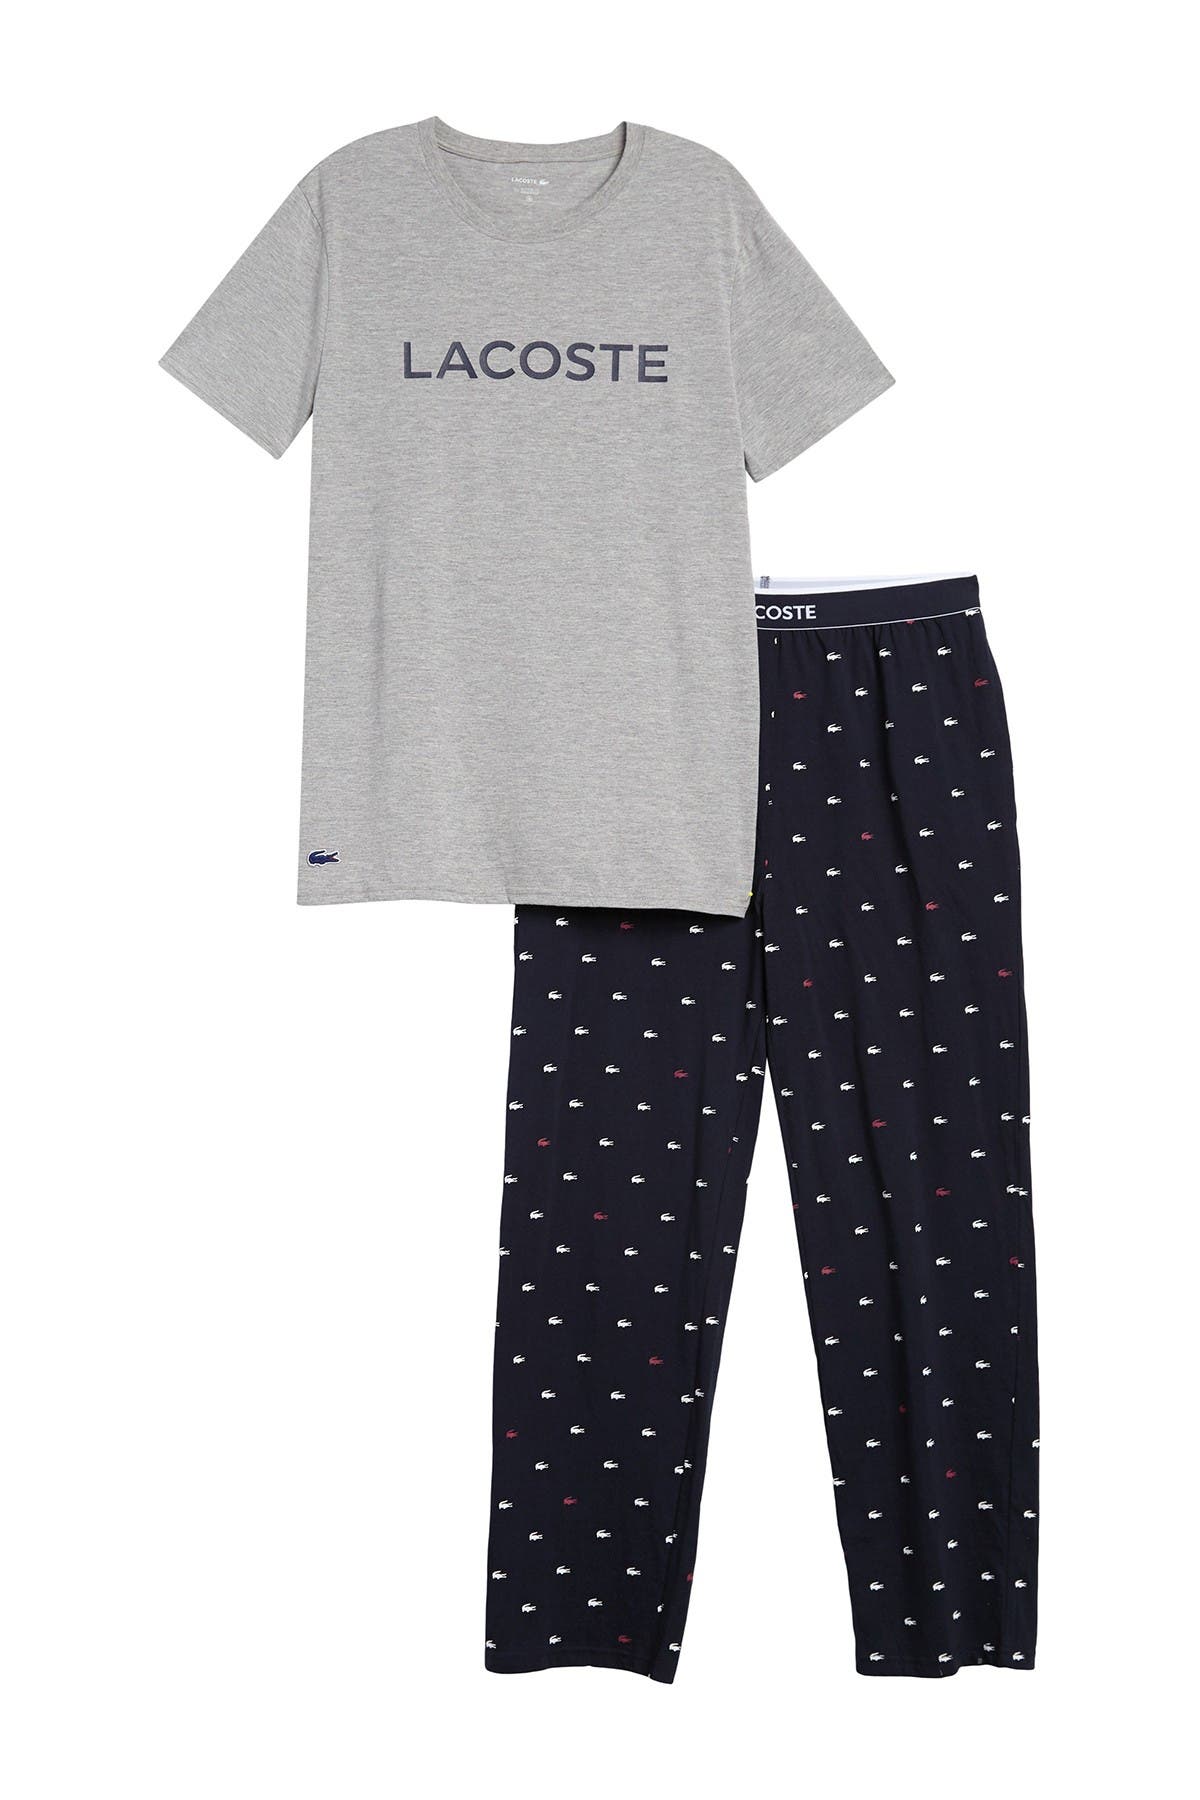 lacoste sleepwear shirt